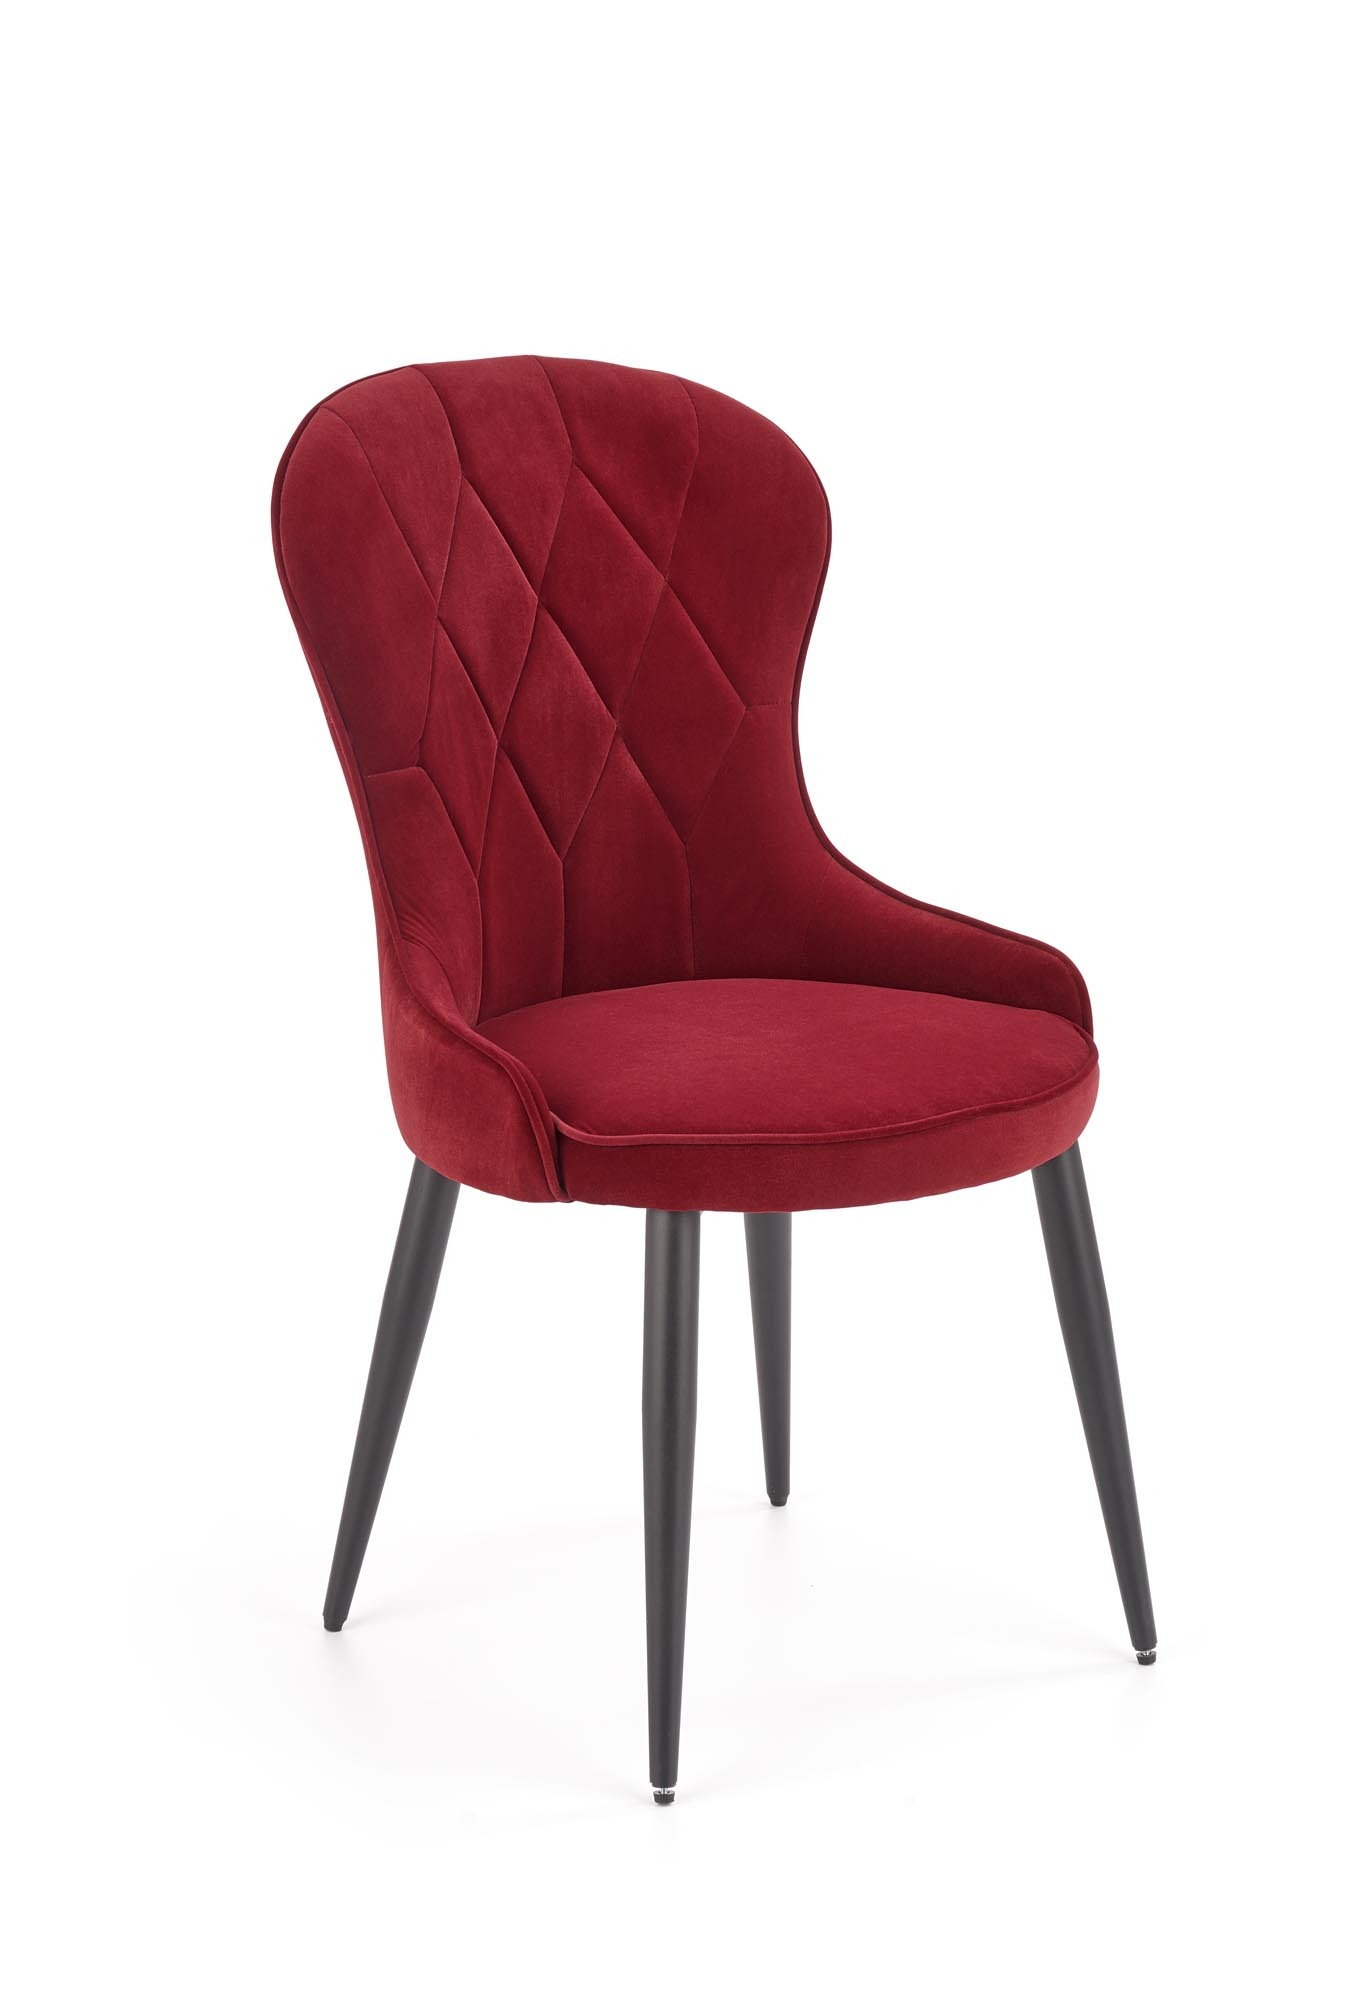 K366 krzesło bordowy